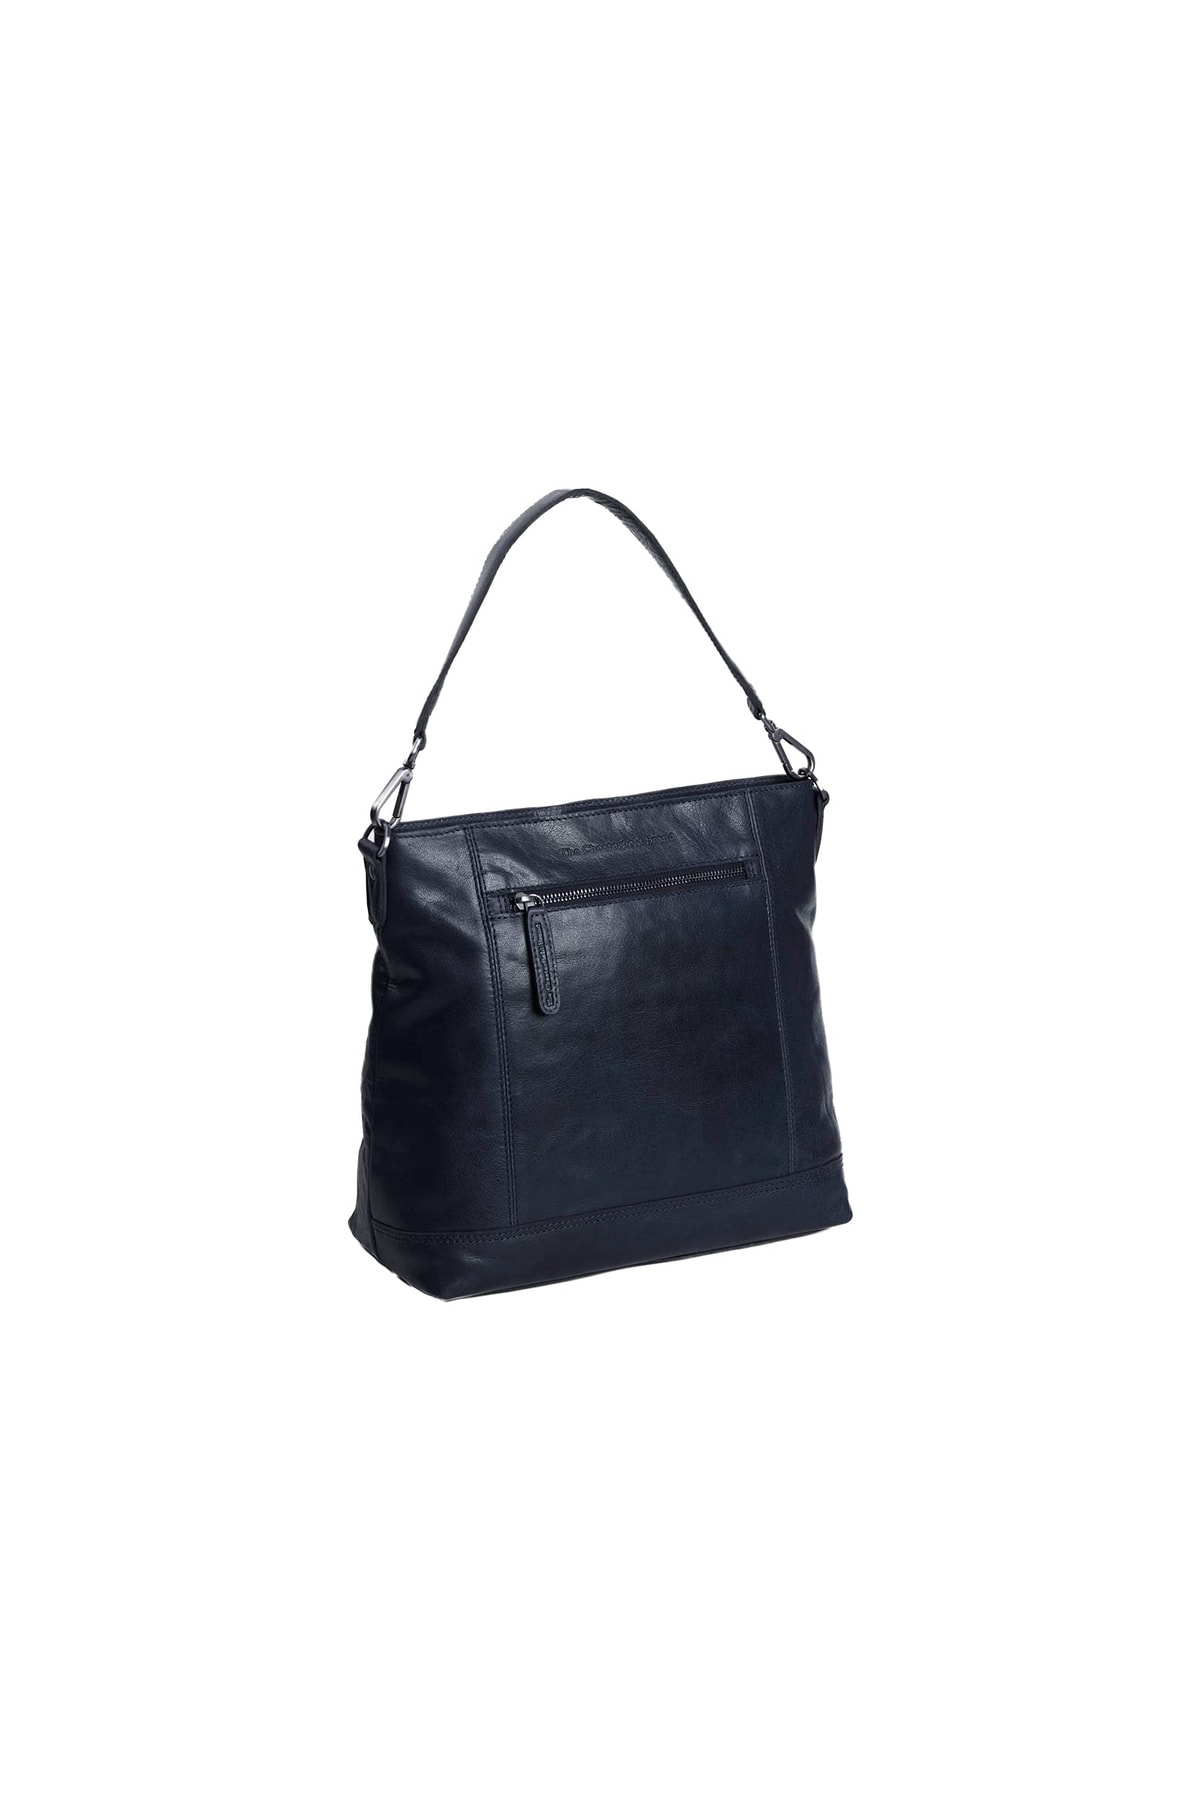 The Chesterfield Brand Handtasche Blau Strukturiert Fast ausverkauft